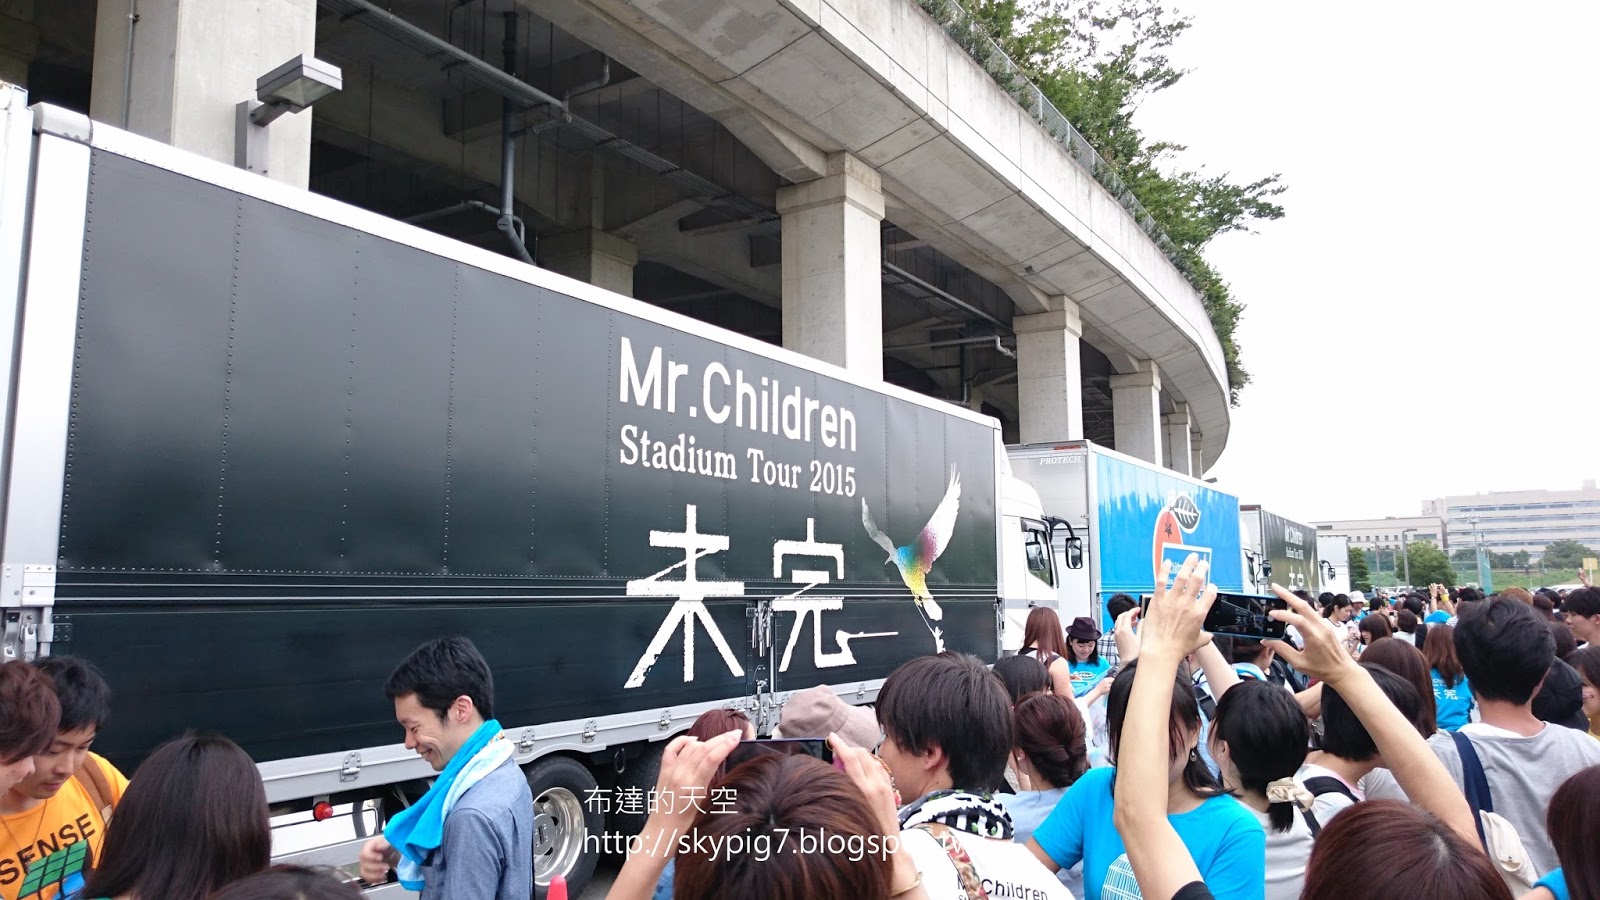 橫浜 Mr Children演唱會15 09 05 布達的天空